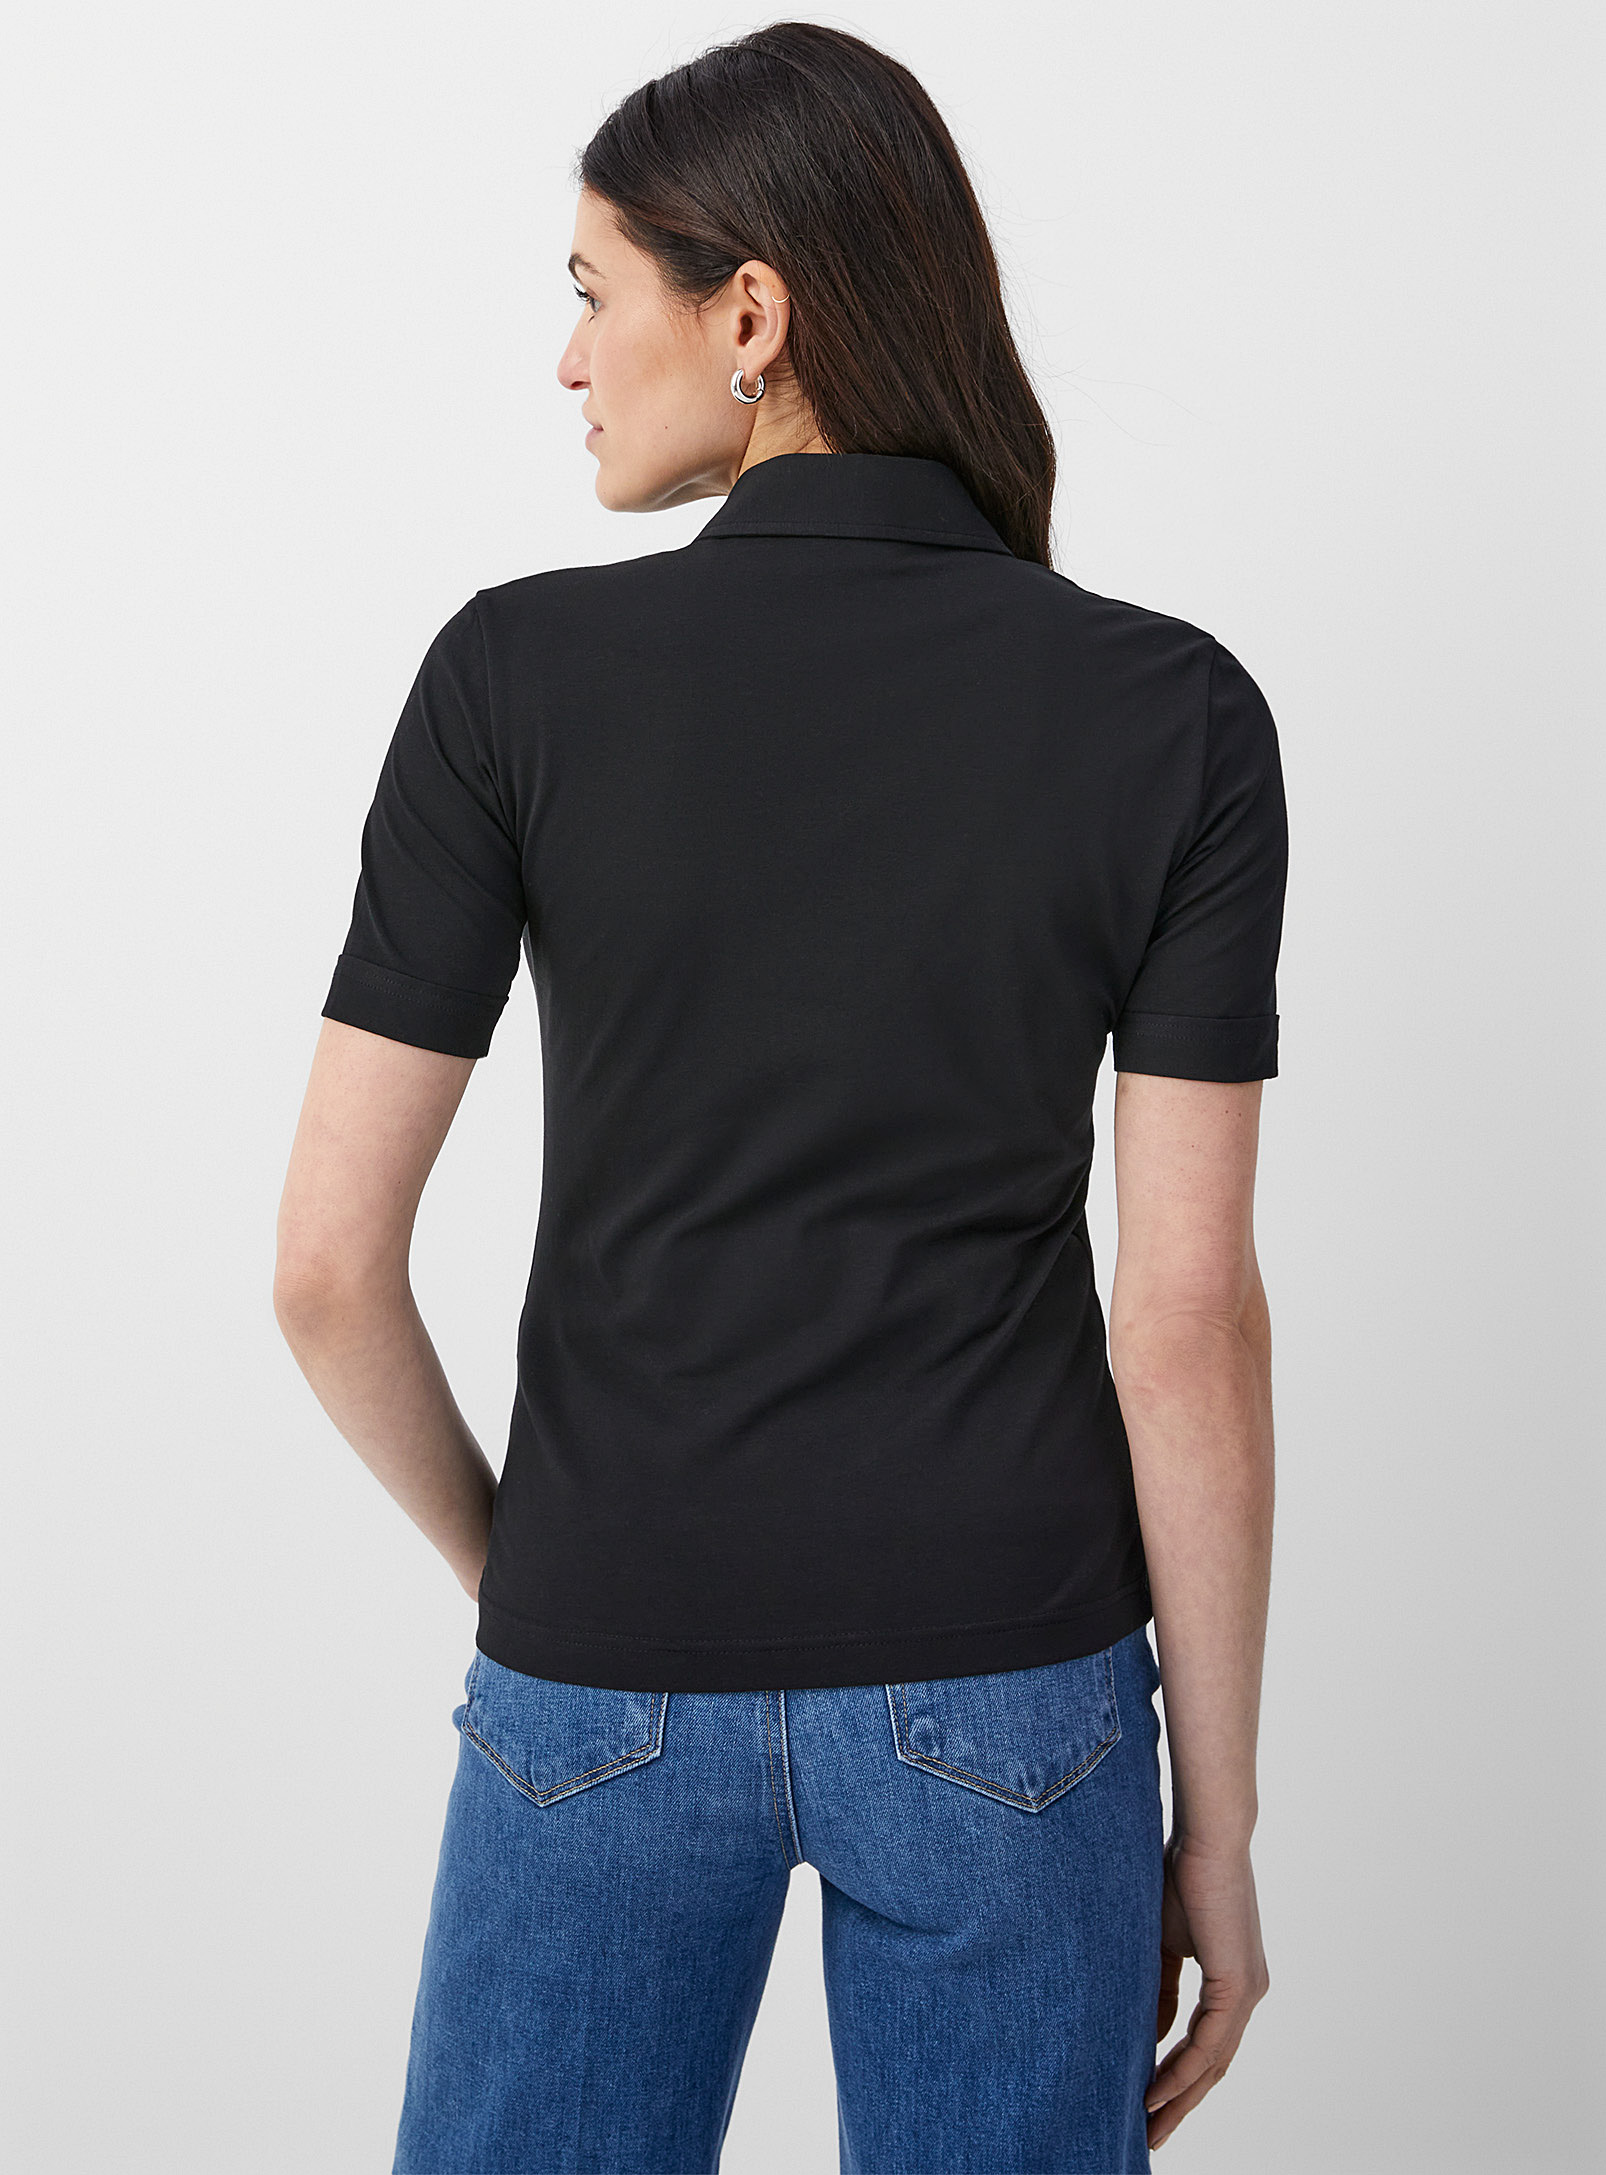 Filippa K - Le t-shirt chemise poche plaquée